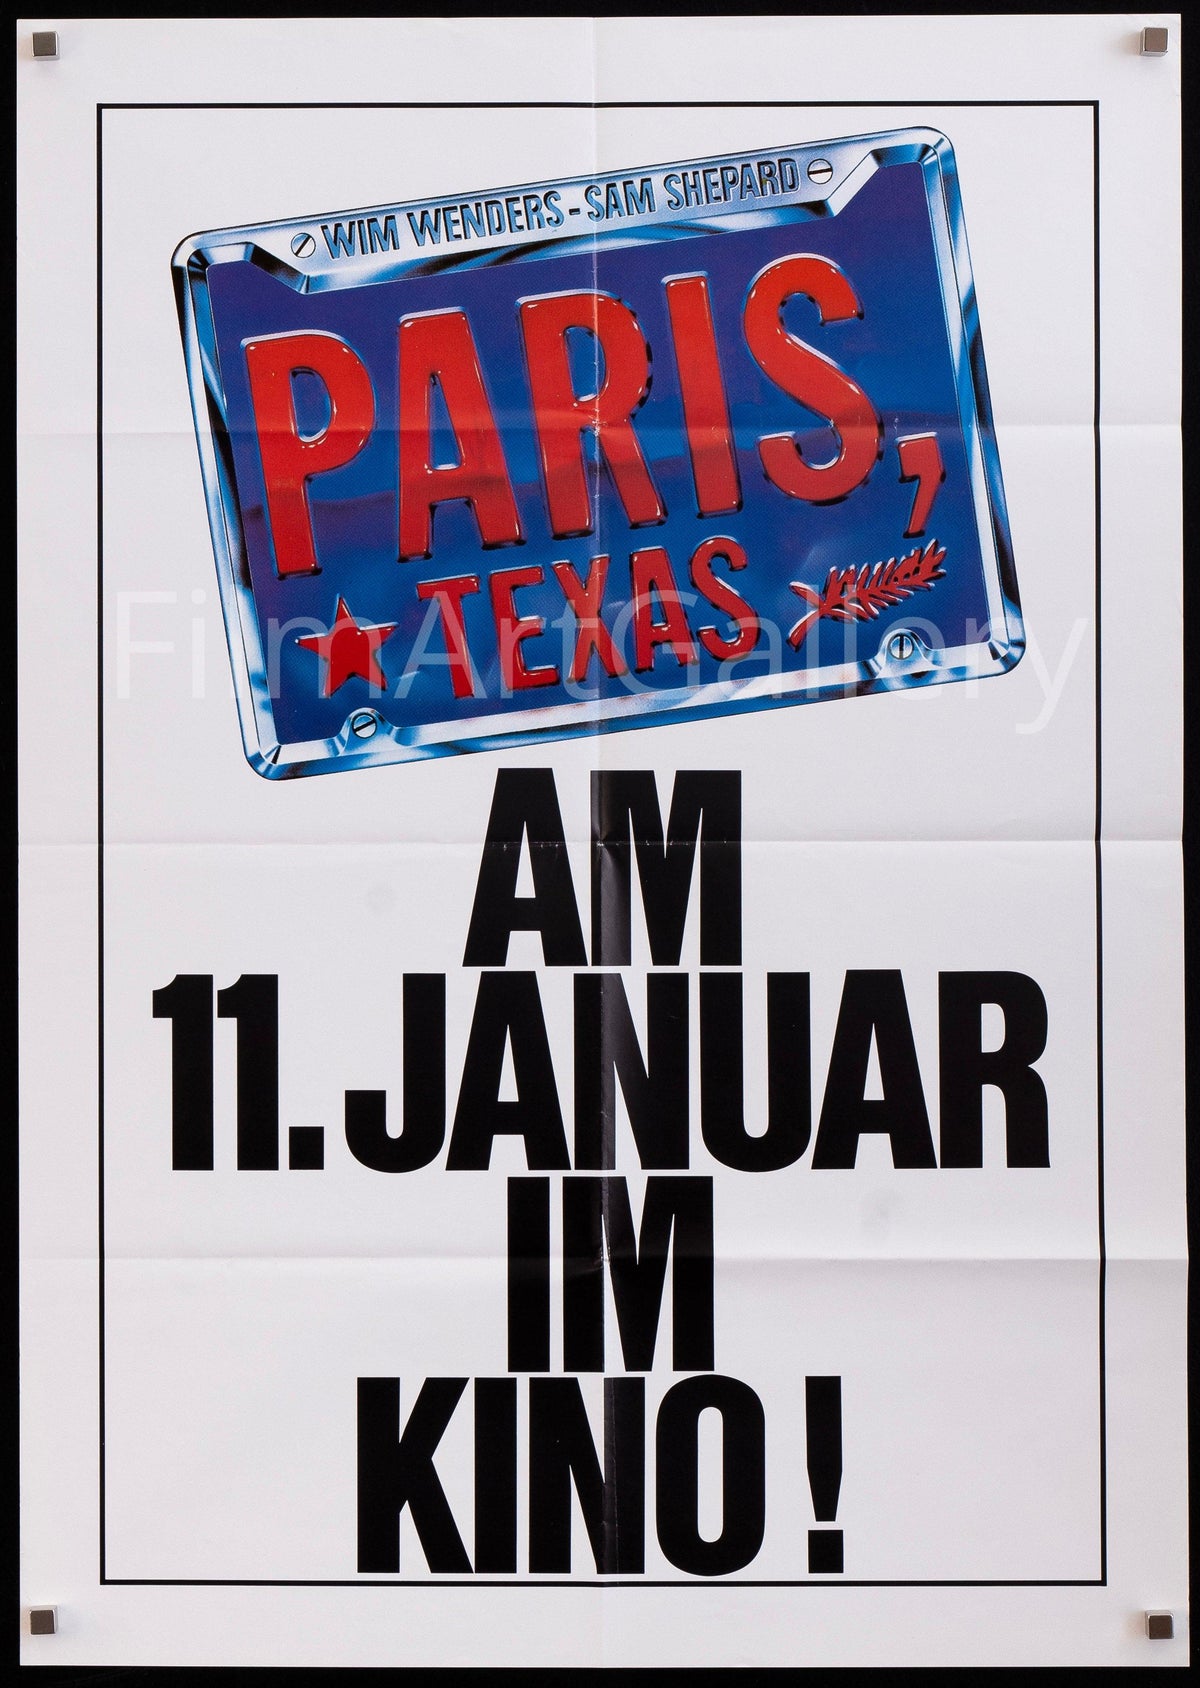 Paris Texas German A1 (23x33) Original Vintage Movie Poster